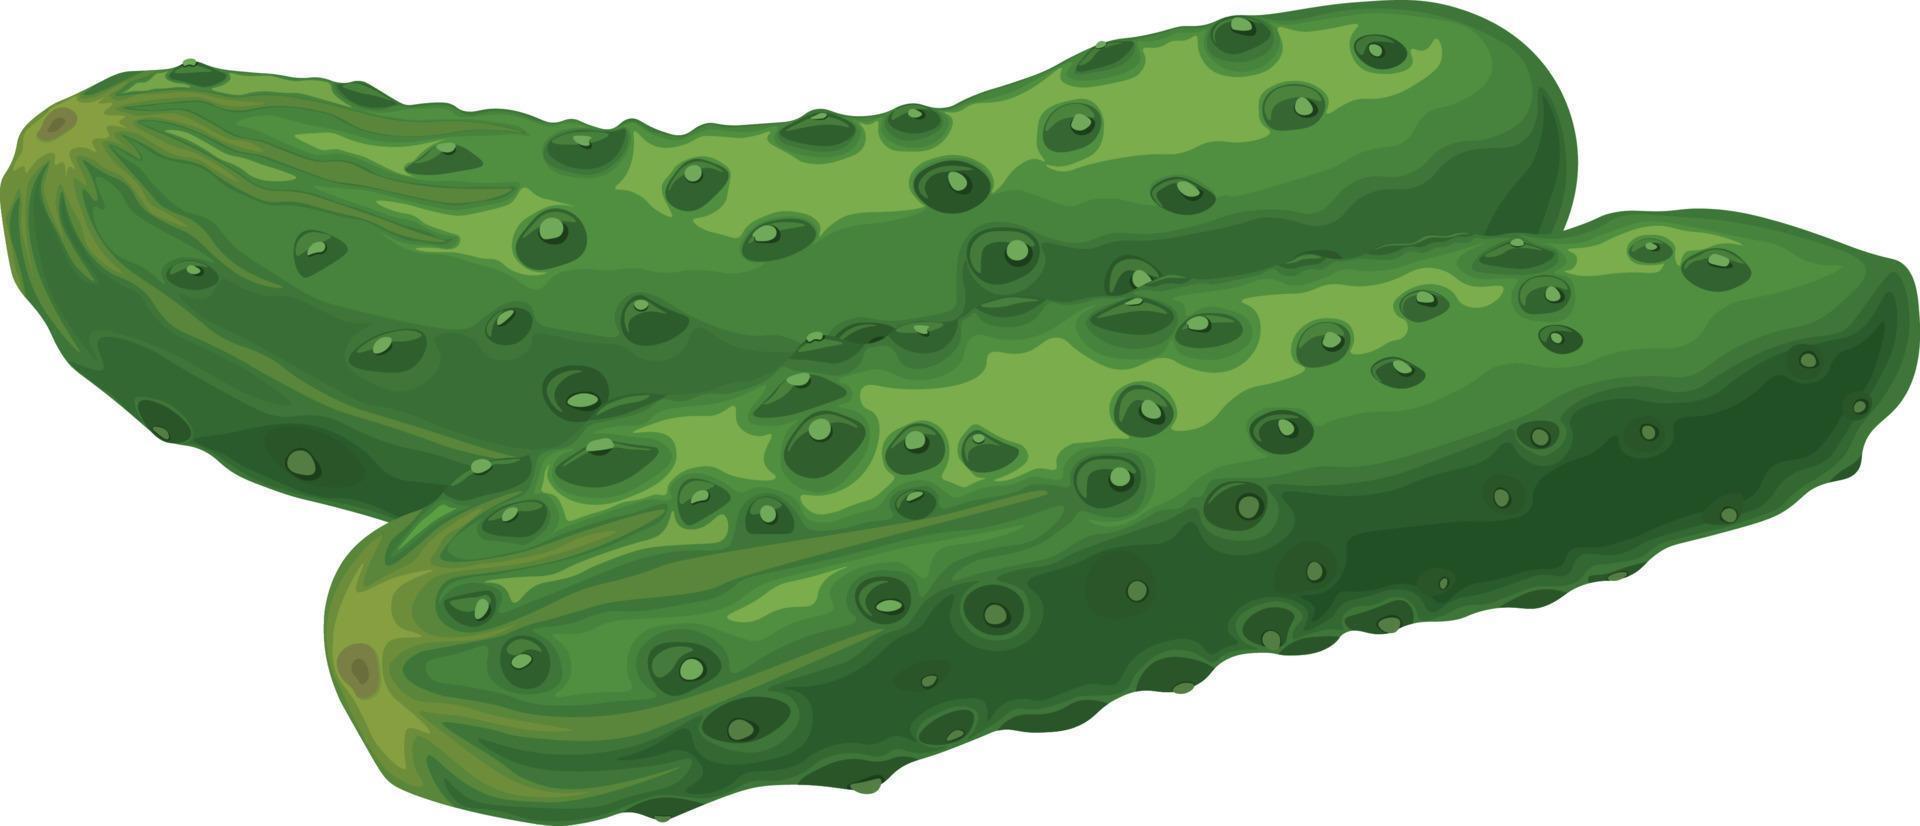 groen komkommer. beeld van een rijp groen komkommer. groen vegetarisch Product. vector illustratie geïsoleerd Aan een wit achtergrond